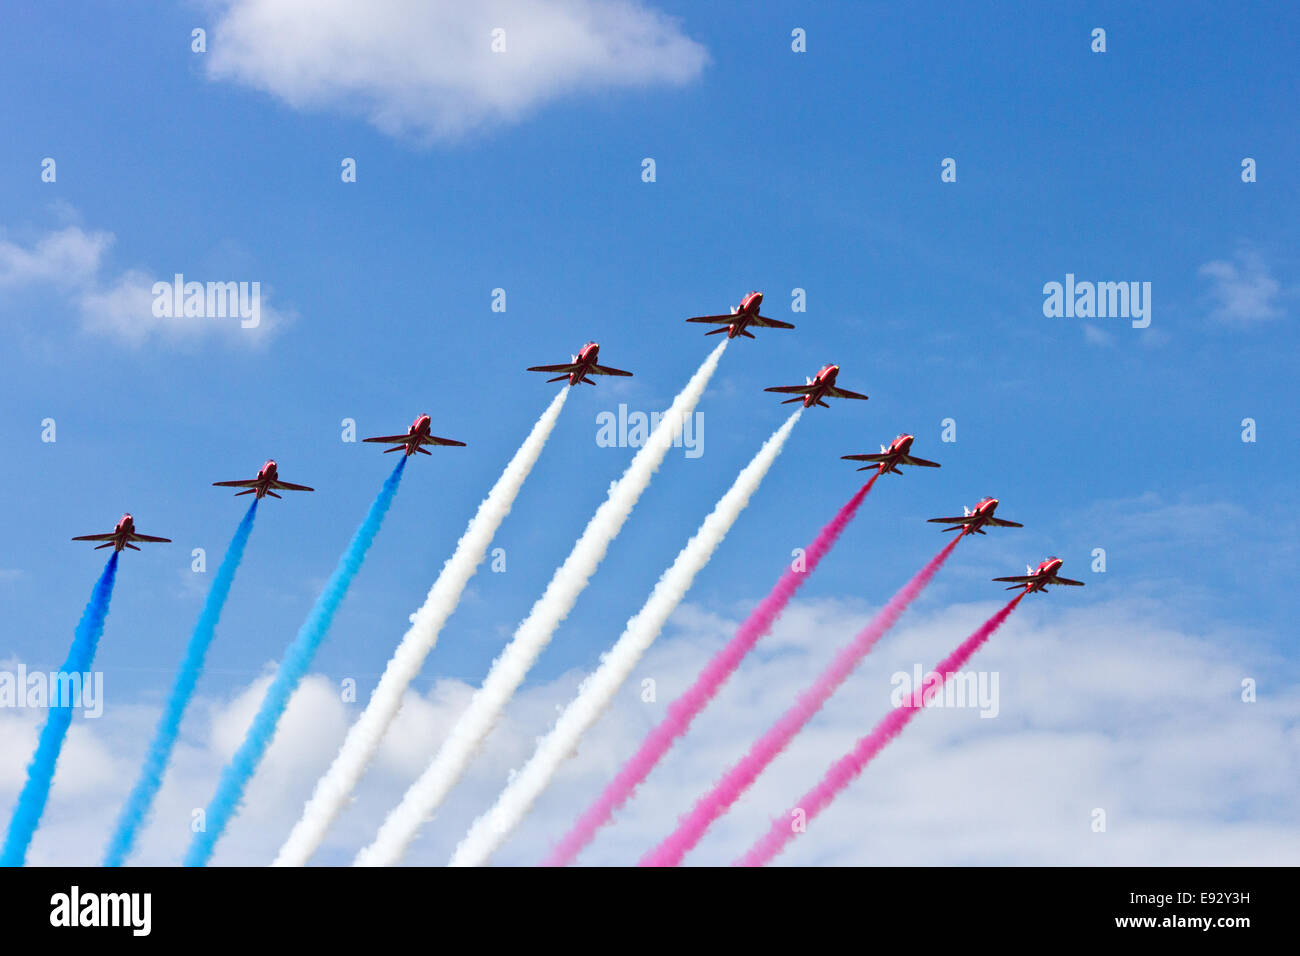 Les flèches rouges de la RAF à l'Armée de l'air néerlandaise Portes Ouvertes le 21 juin 2014 à la base aérienne de Gilze-Rijen Banque D'Images